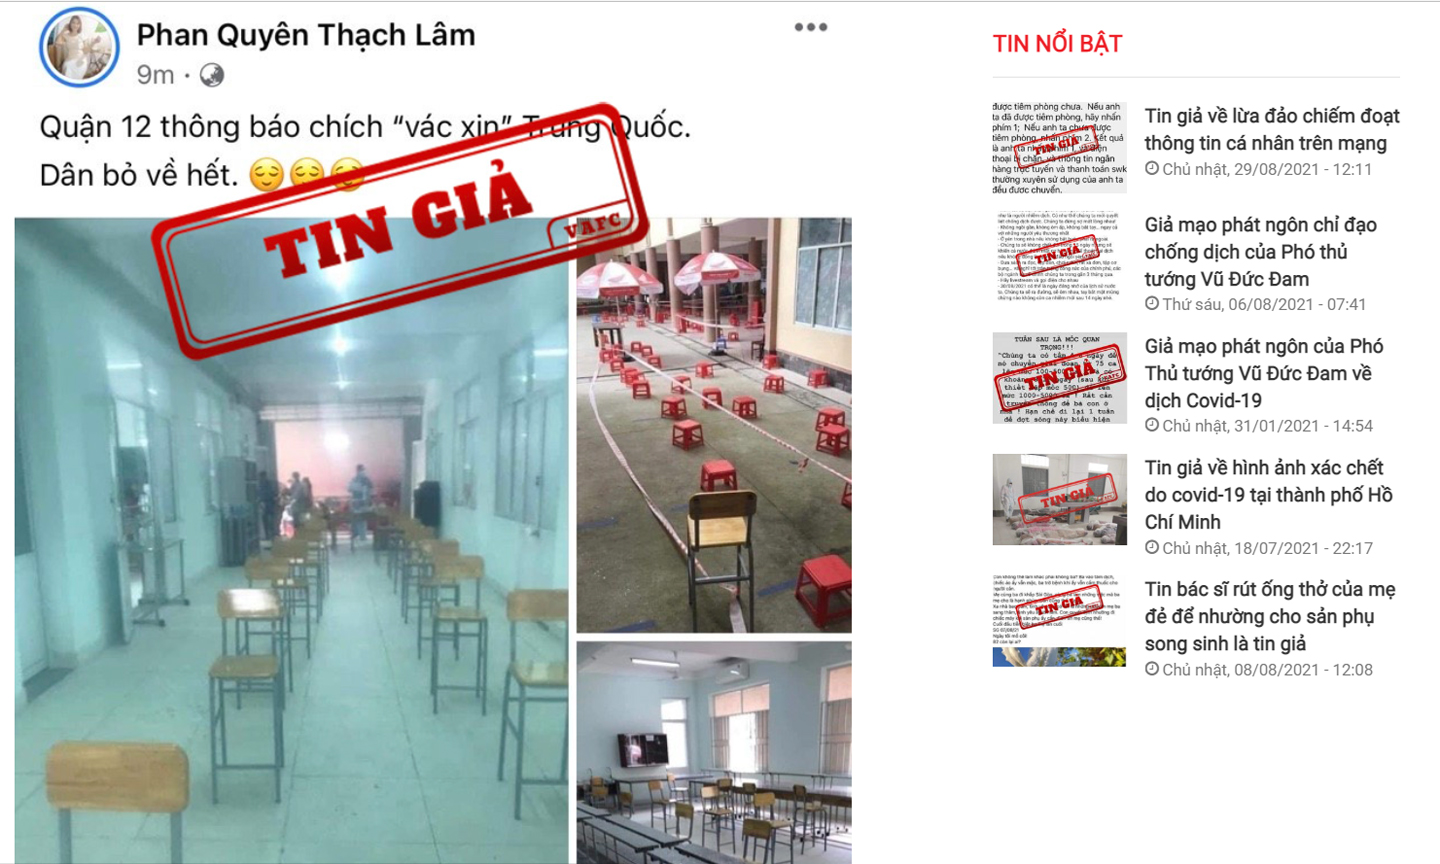 Cảnh báo tin giả trên Cổng thông tin tiếp nhận phản ánh và công bố tin giả tại địa chỉ tingia.gov.vn. 